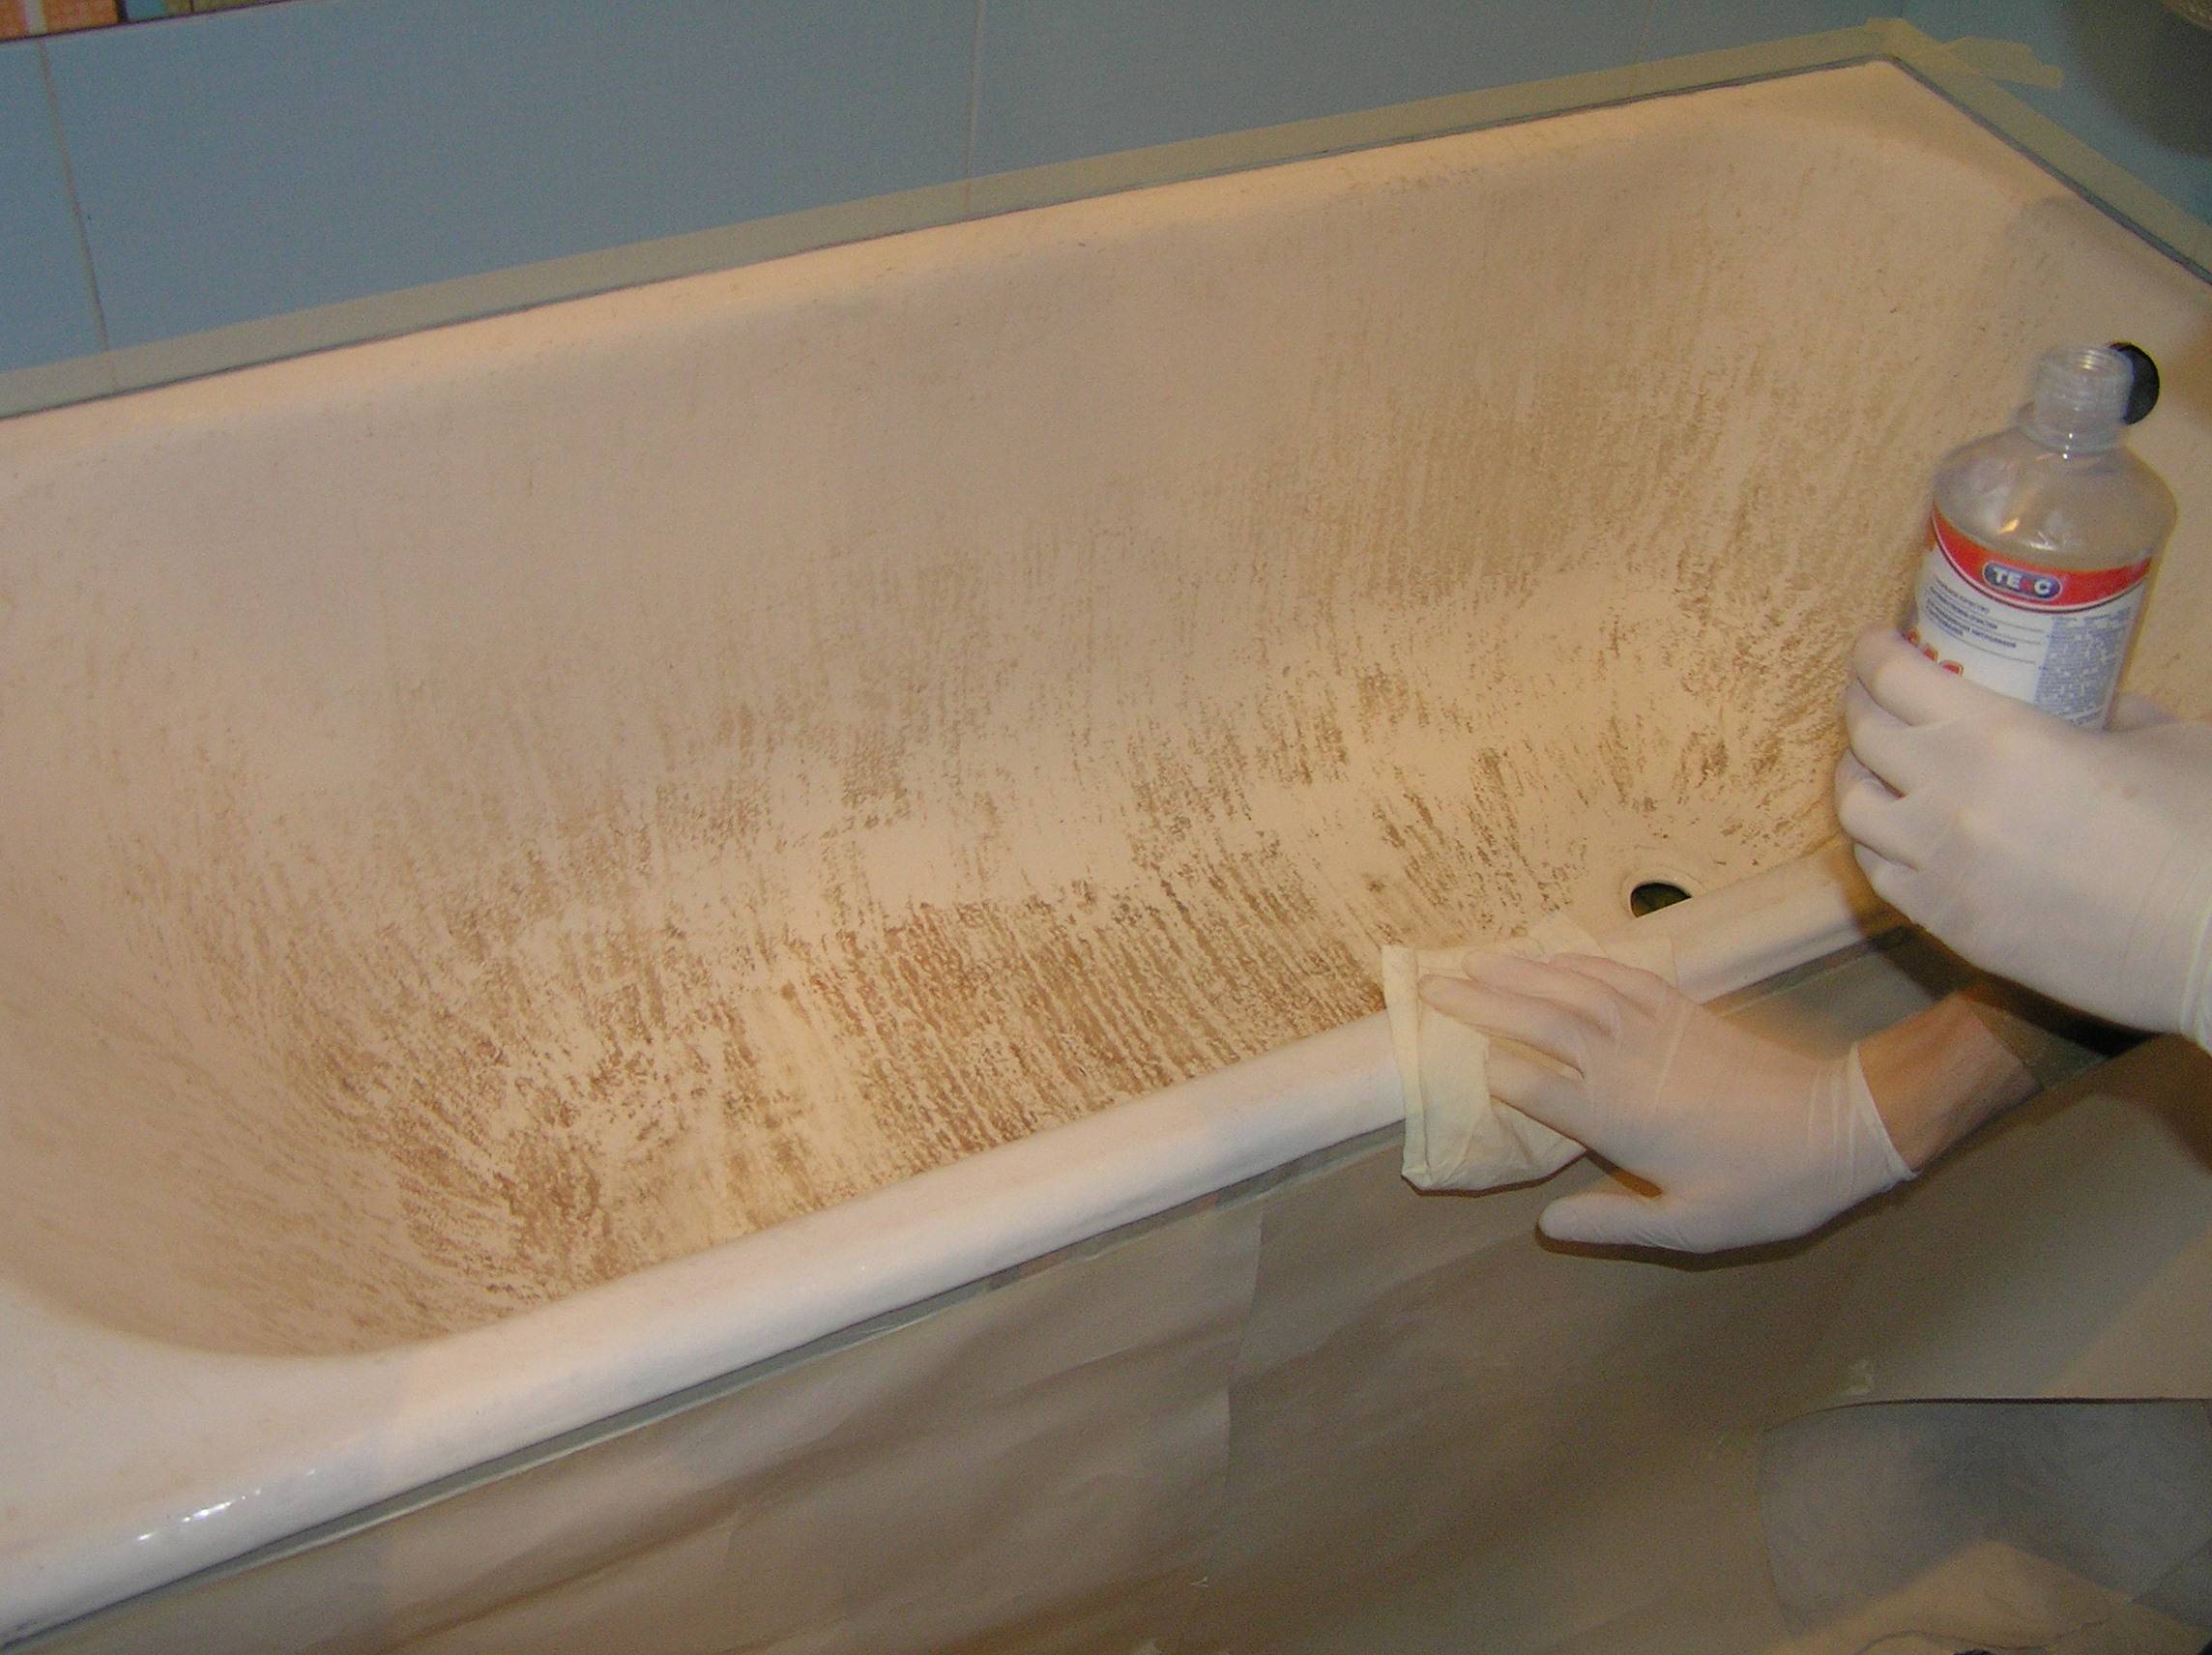 Реставрация ванн жидким акрилом